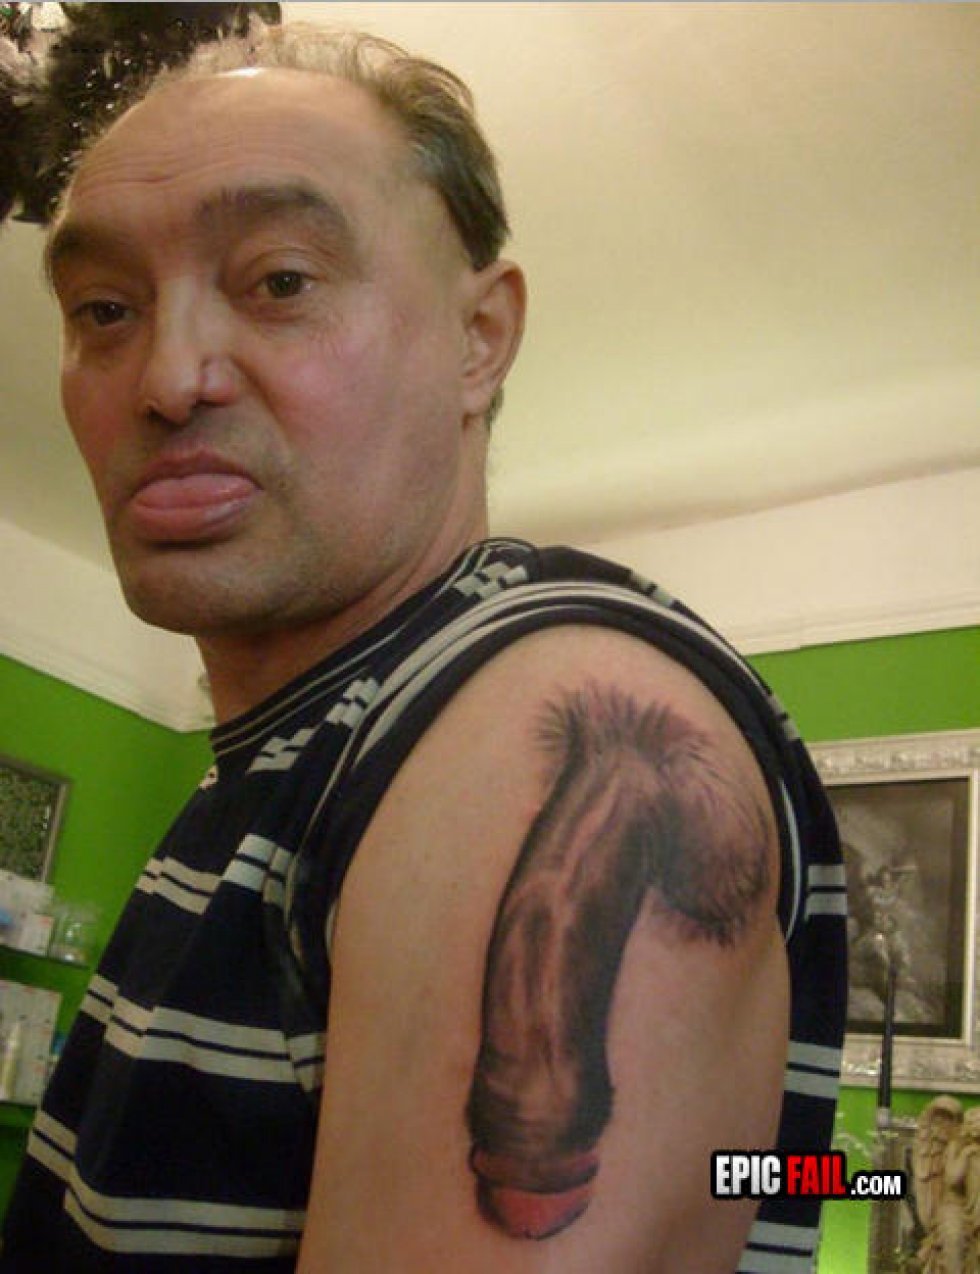 10 personer, der helt sikkert fortryder deres tatovering